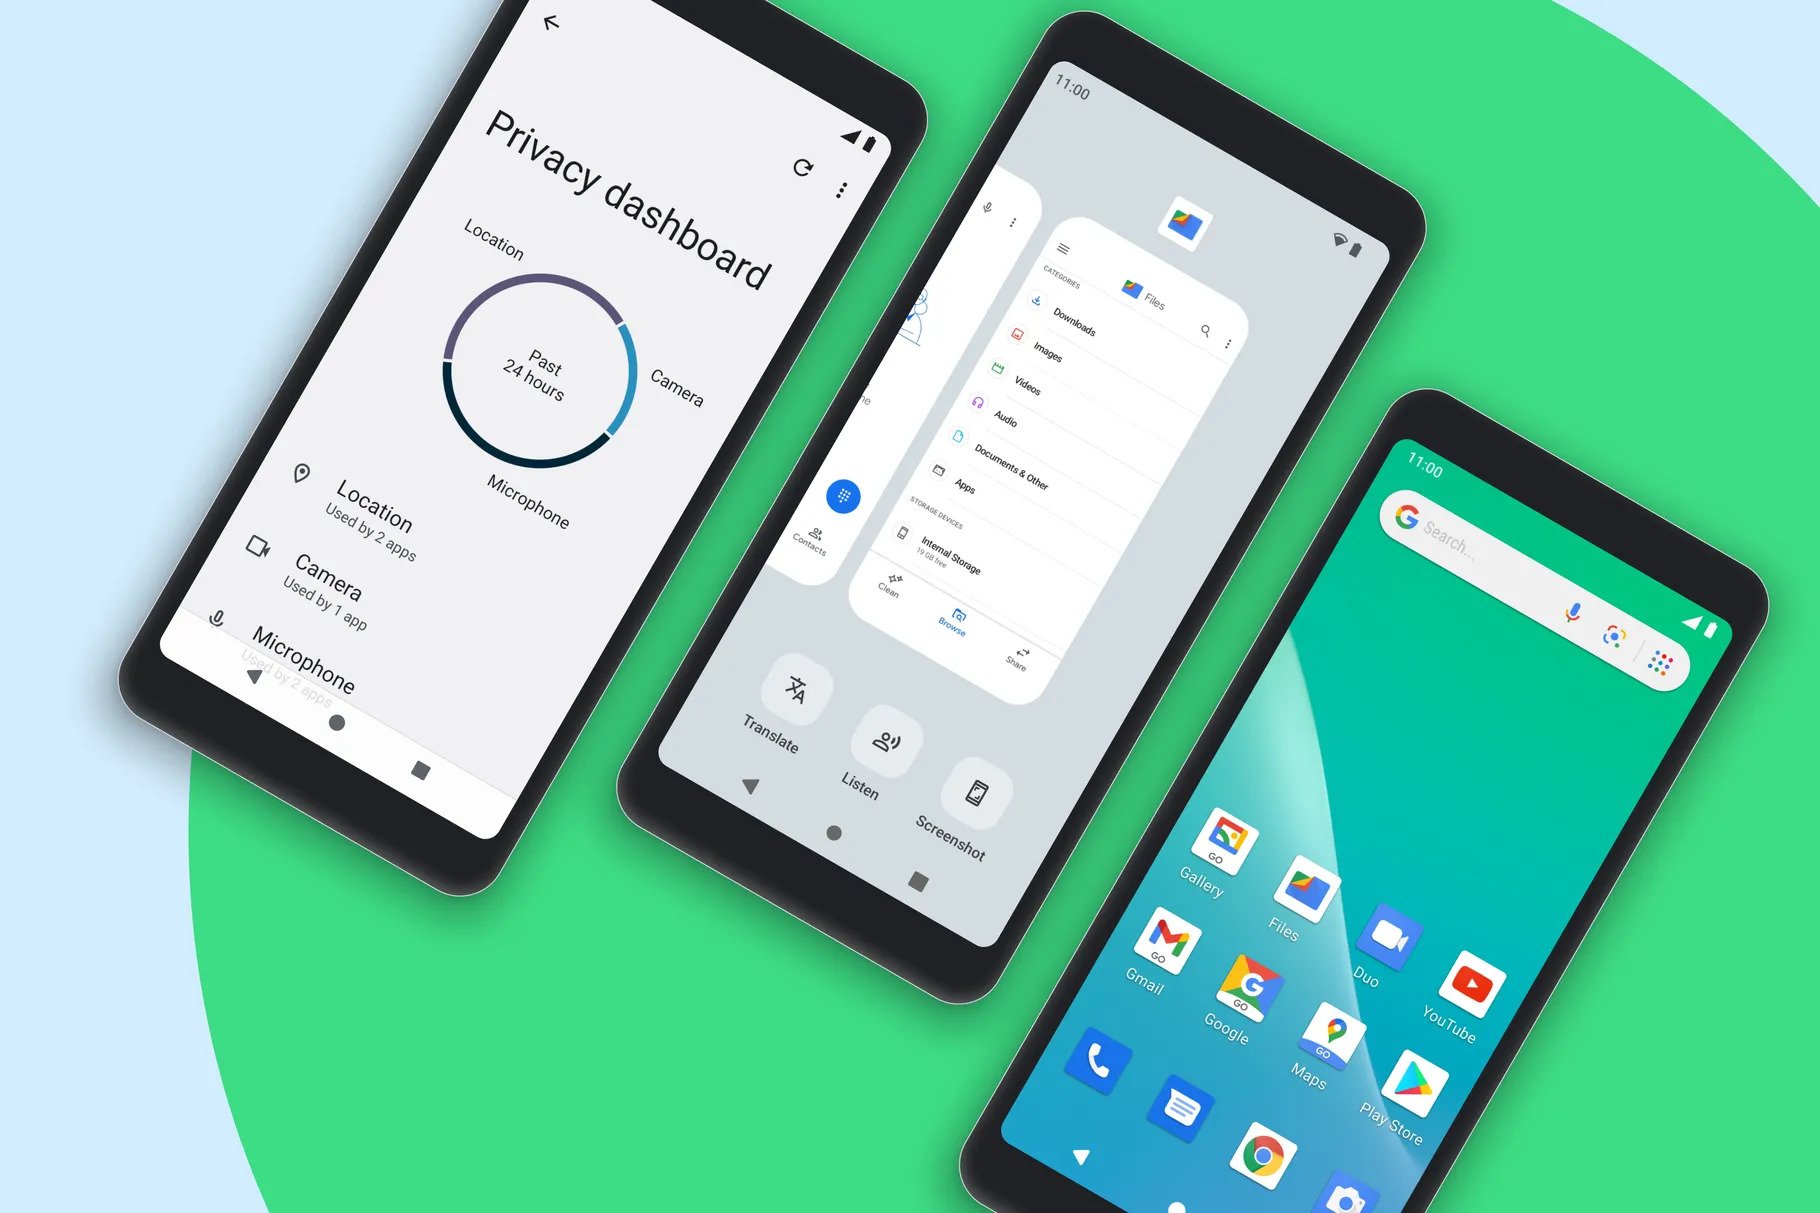 Android Go yafikia watumiaji milioni 200 wa kila siku kufikia sasisho la Android 12